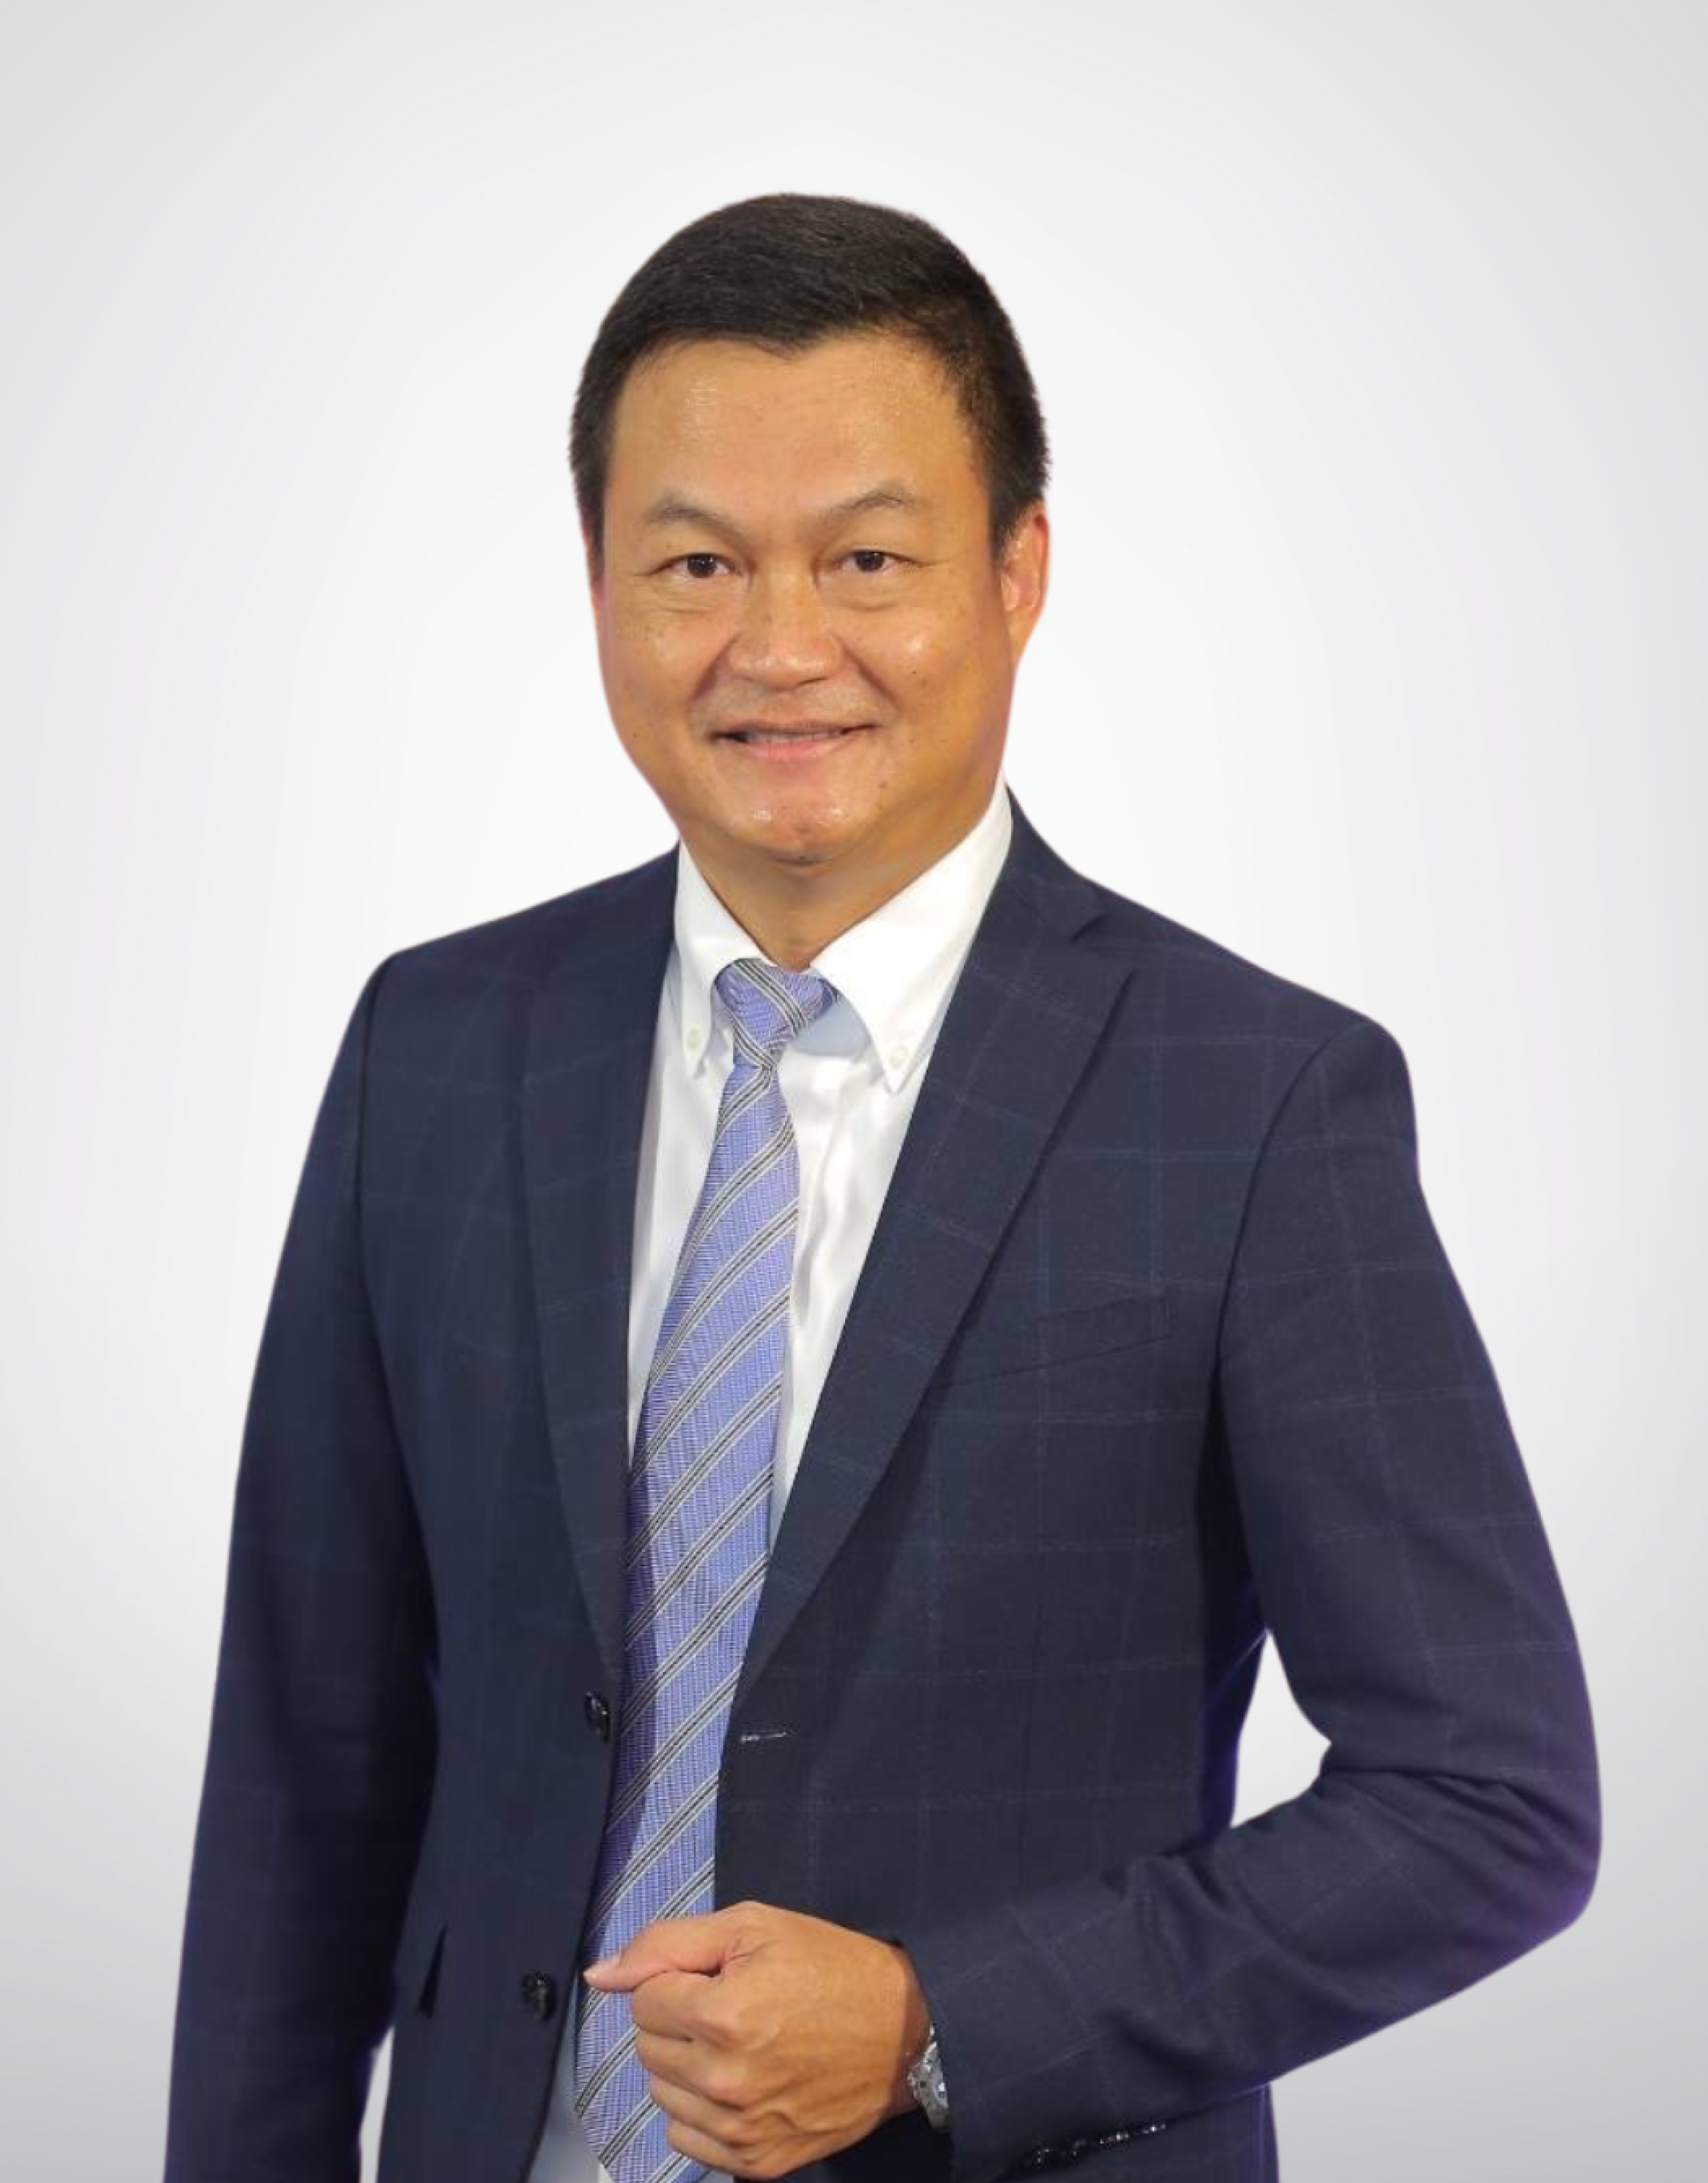 Mr. Praween Wirotpan